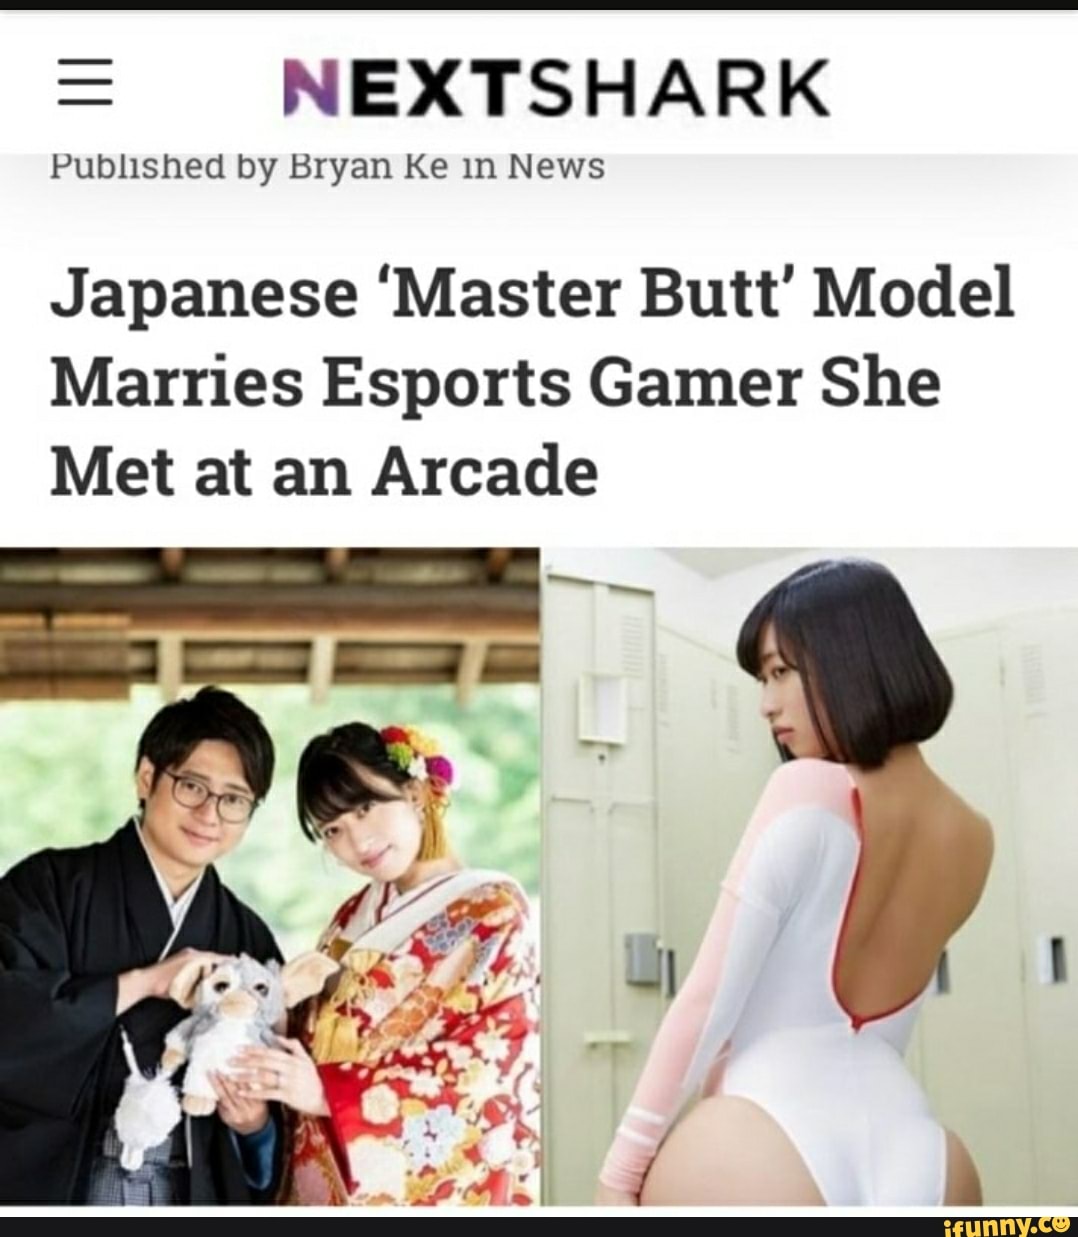 Japanese.master butt